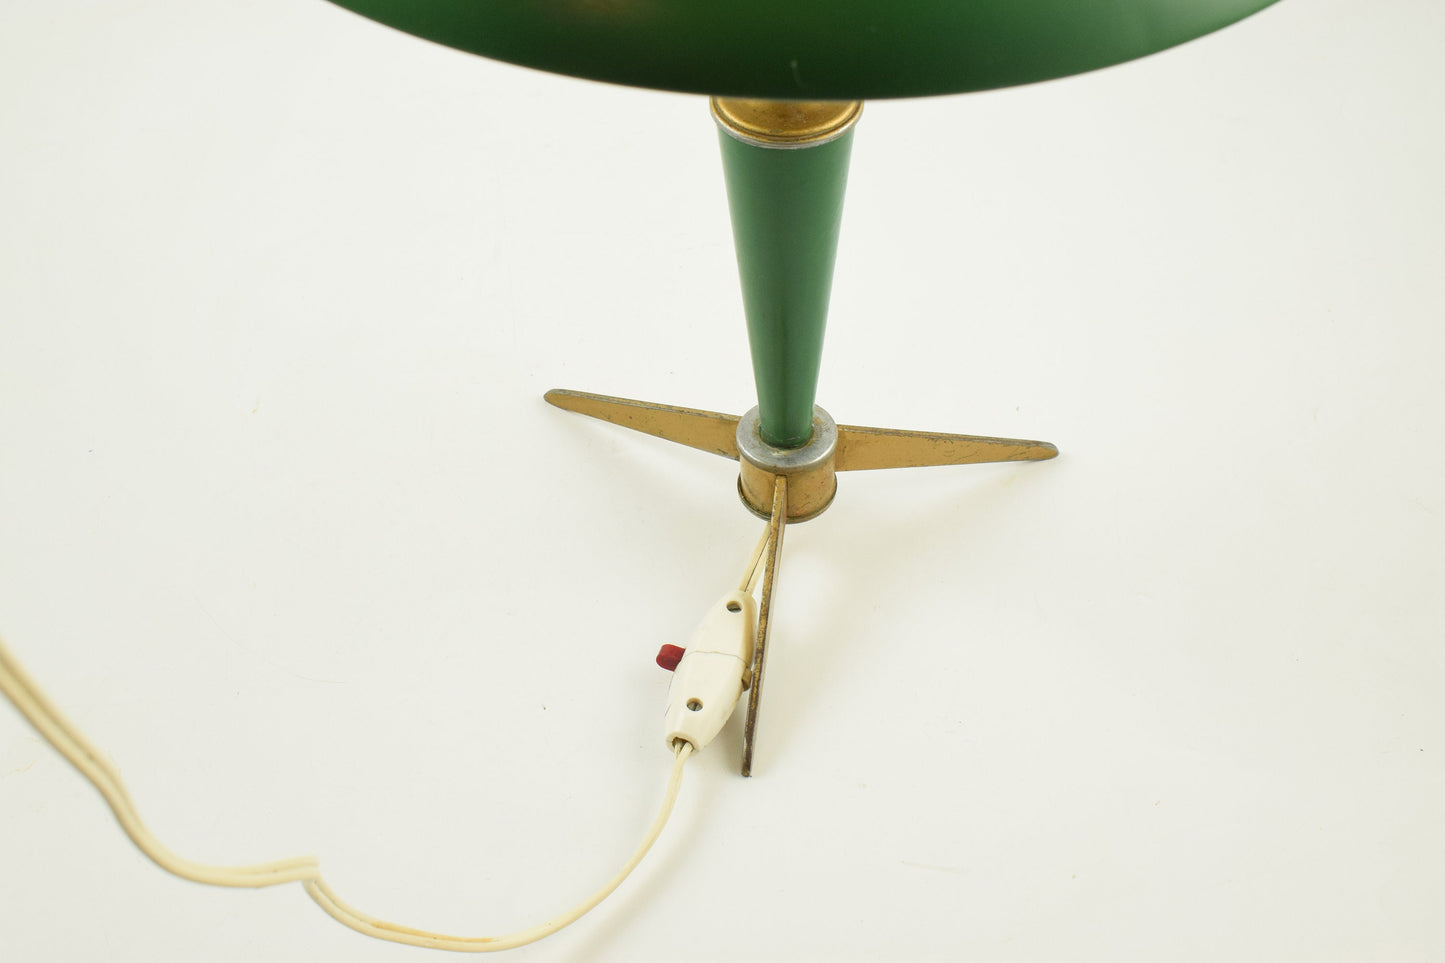 Louis Kalff tafellamp philips "bijou" industrieel design uit de jaren 50